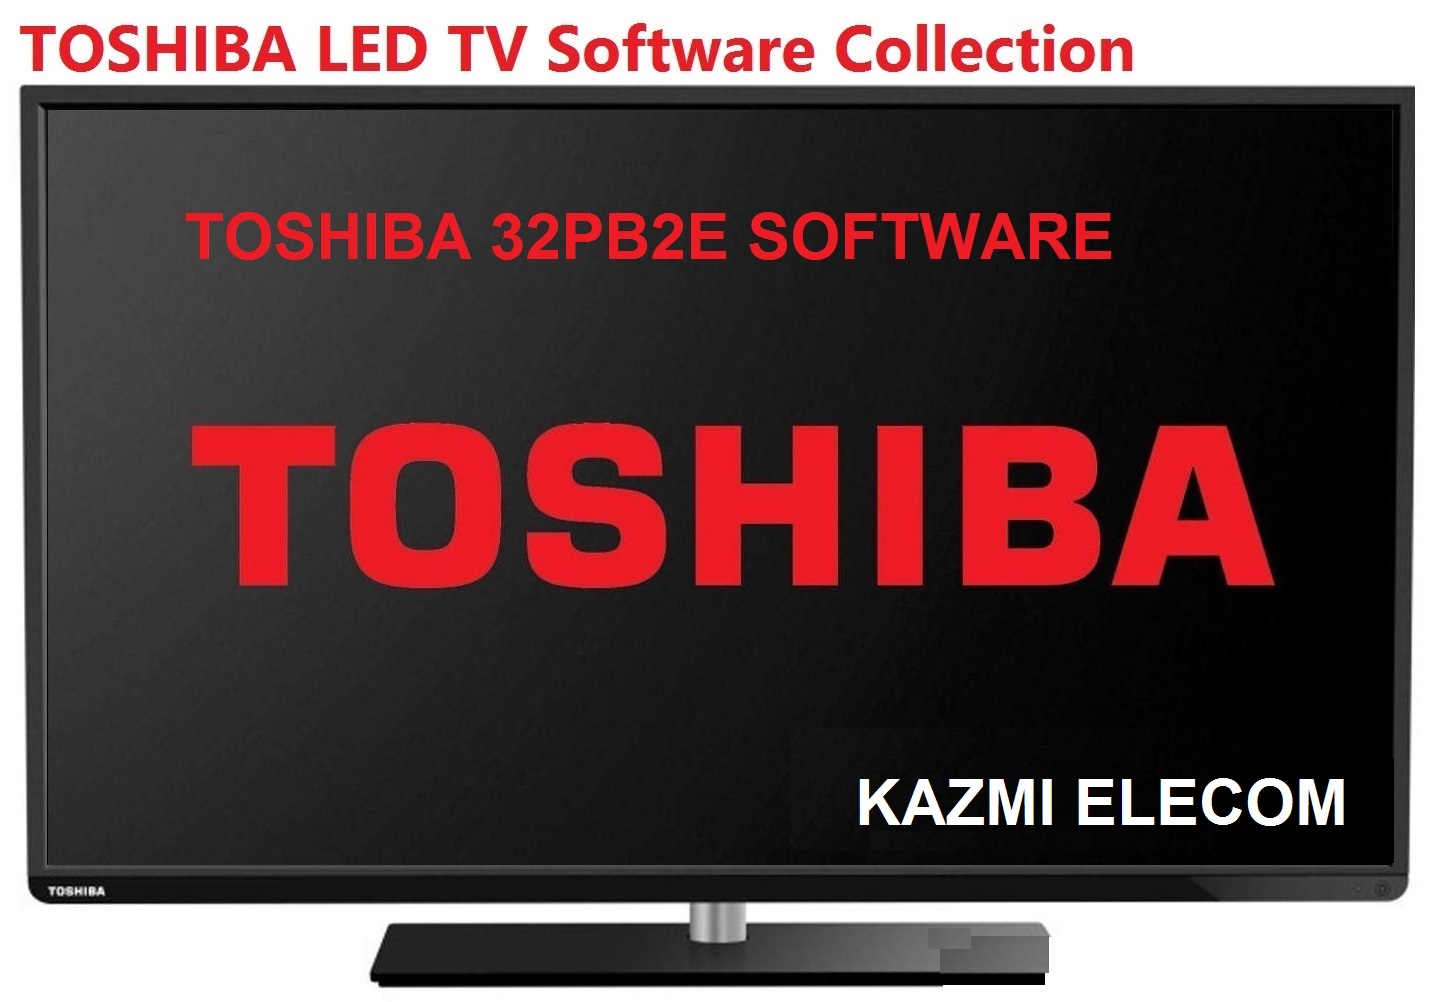 Toshiba 32Pb2E